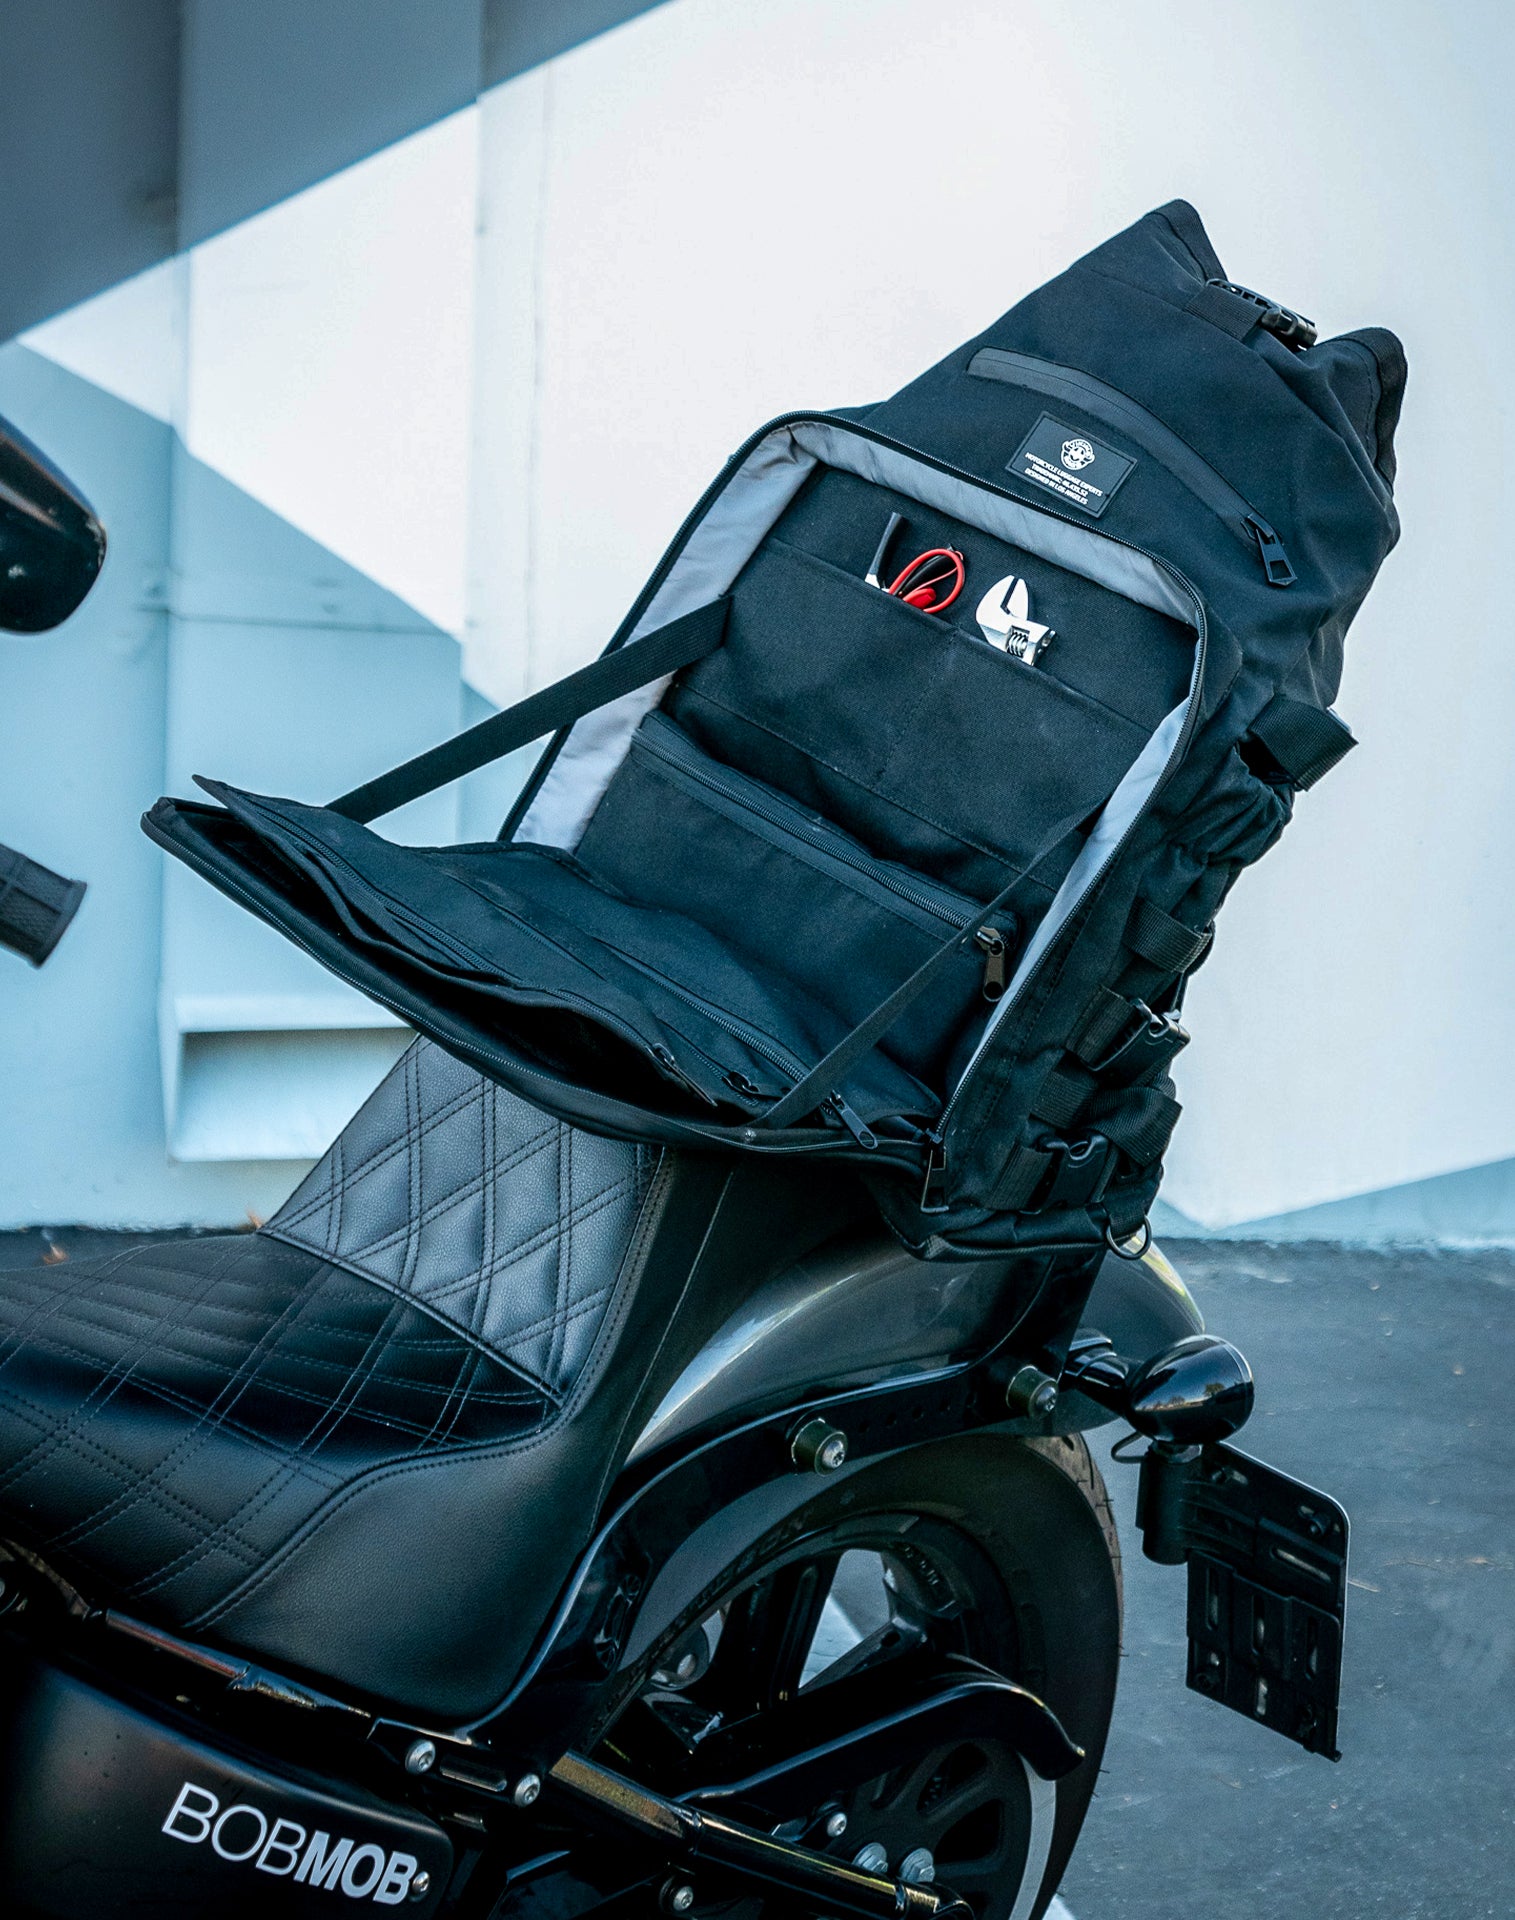 32L - Renegade XL Hyosung Motorcycle Sissy Bar Bag